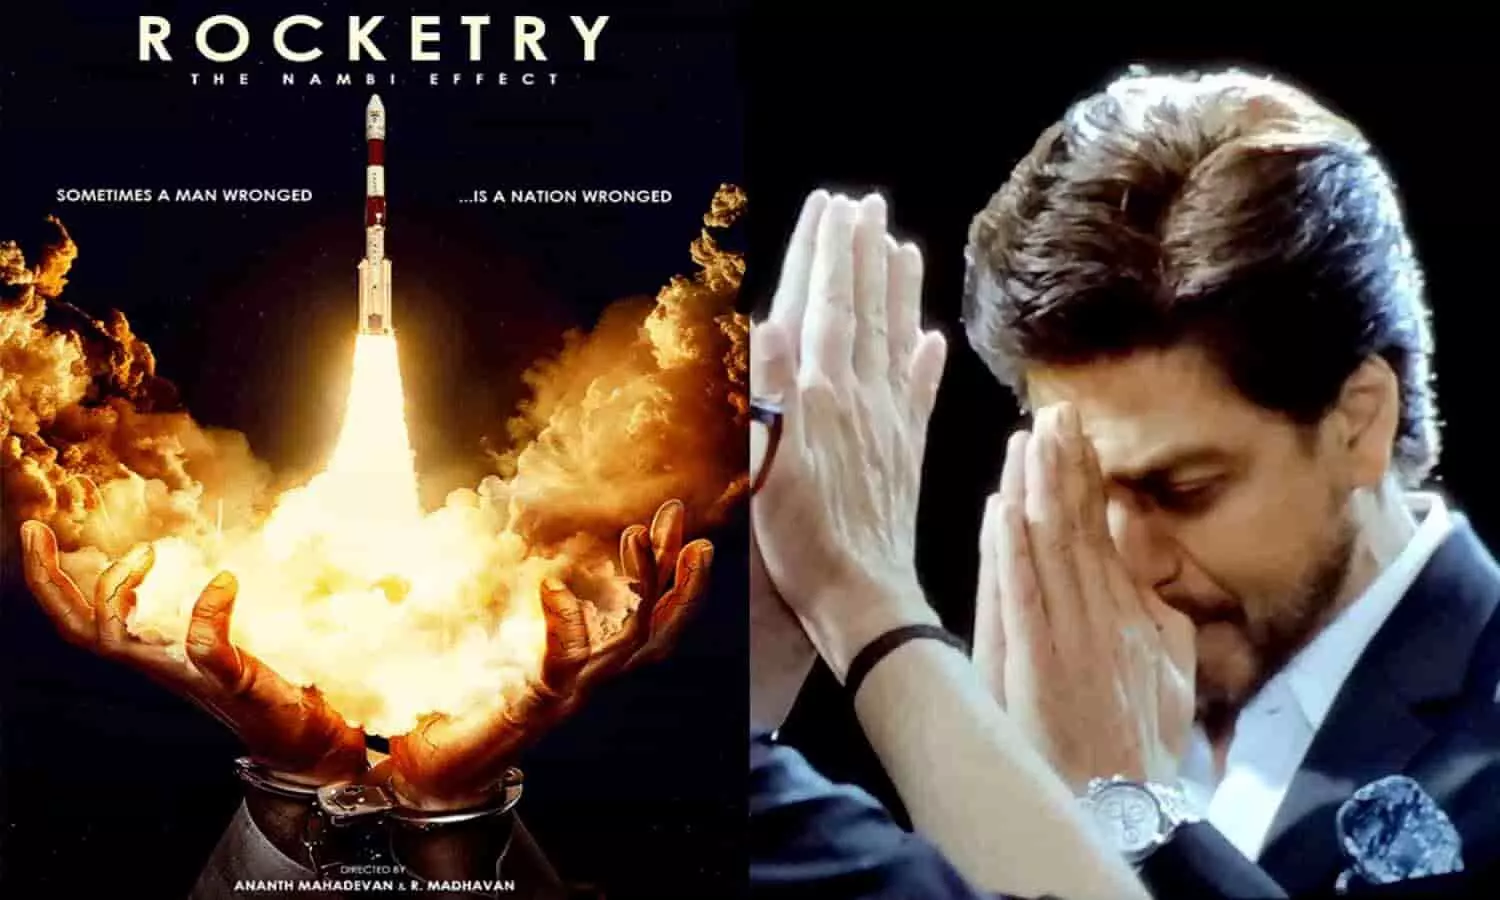 Rocketry: आर माधवन की फिल्म रॉकेट्री में छाए शाहरुख खान, कैमियो रोल में किंग ने जीत लिया फैंस का दिल